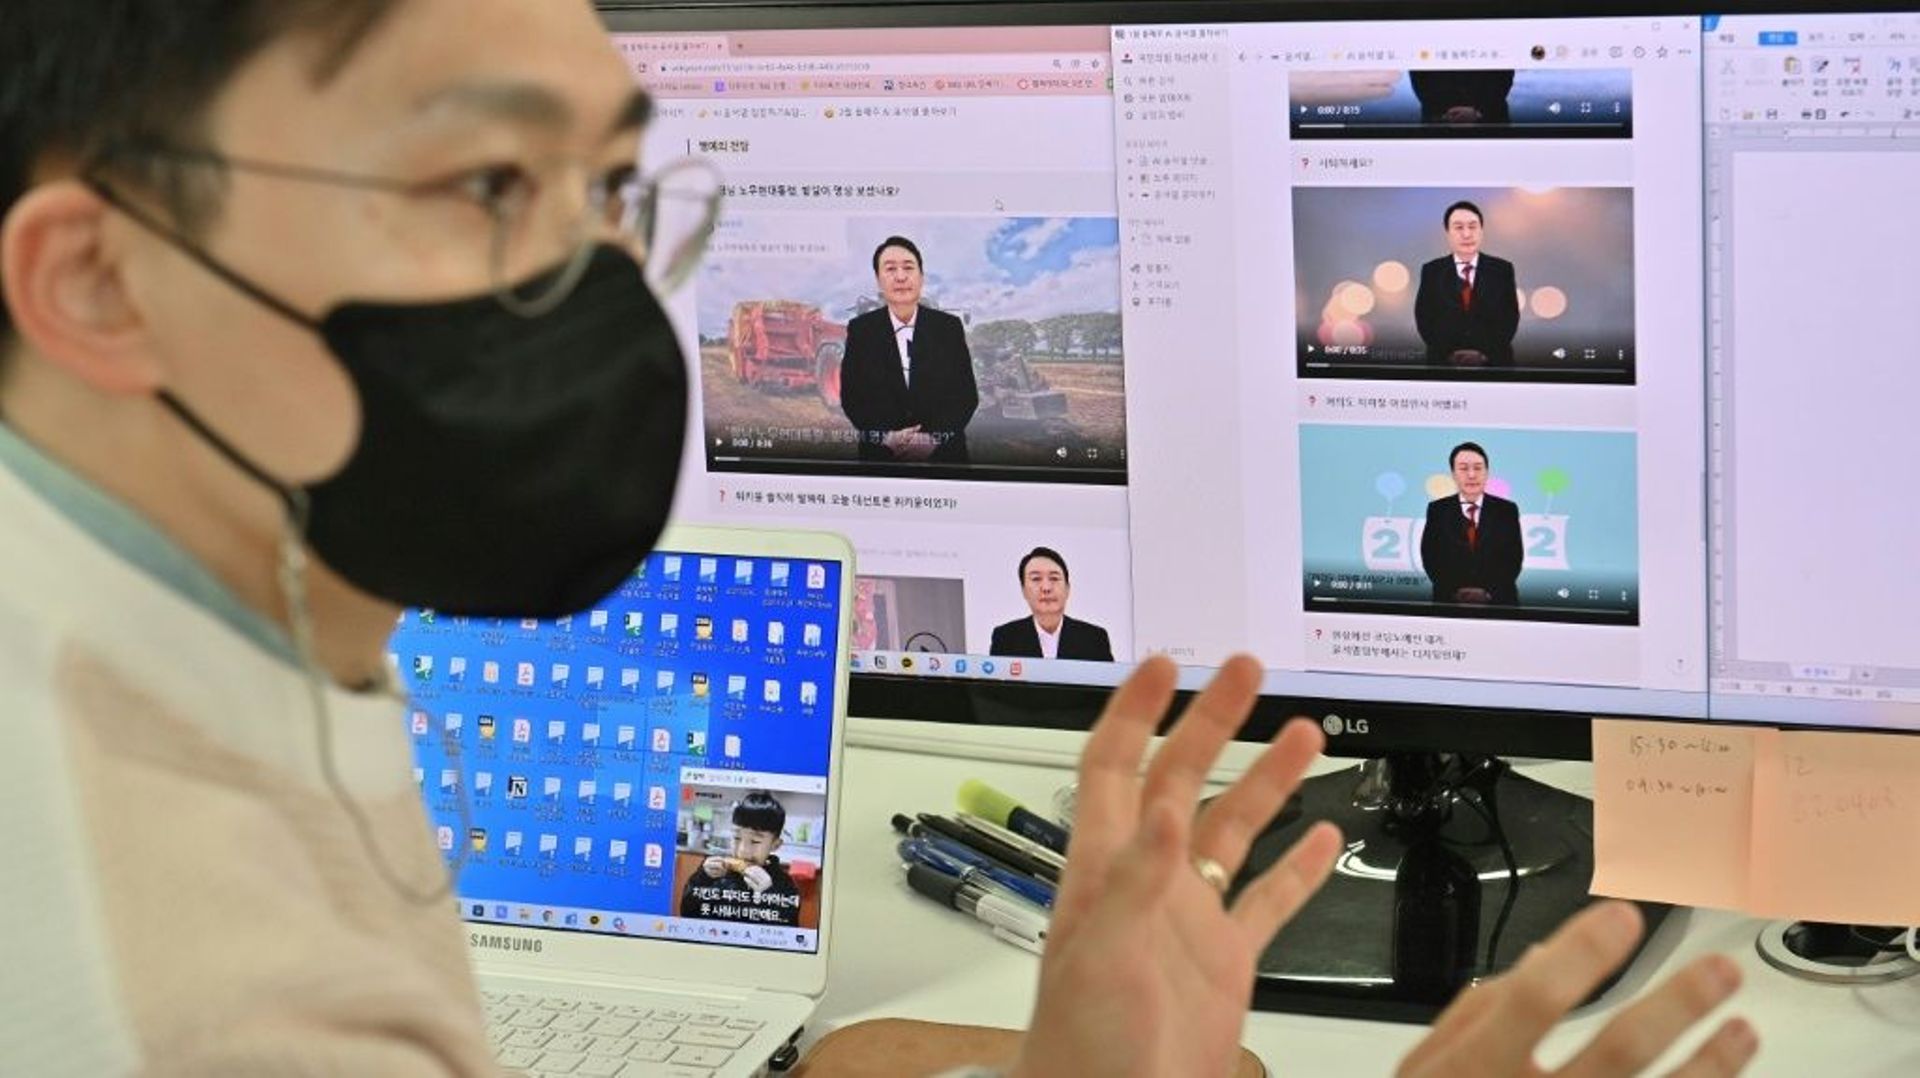 Baik Kyeong-hoon, directeur de l'équipe "AI Yoon", réalise un clip vidéo avec l'avatar numérique du candidat à la présidence Yoon Suk-yeol, le 7 février 2022 à Séoul, en Corée du Sud